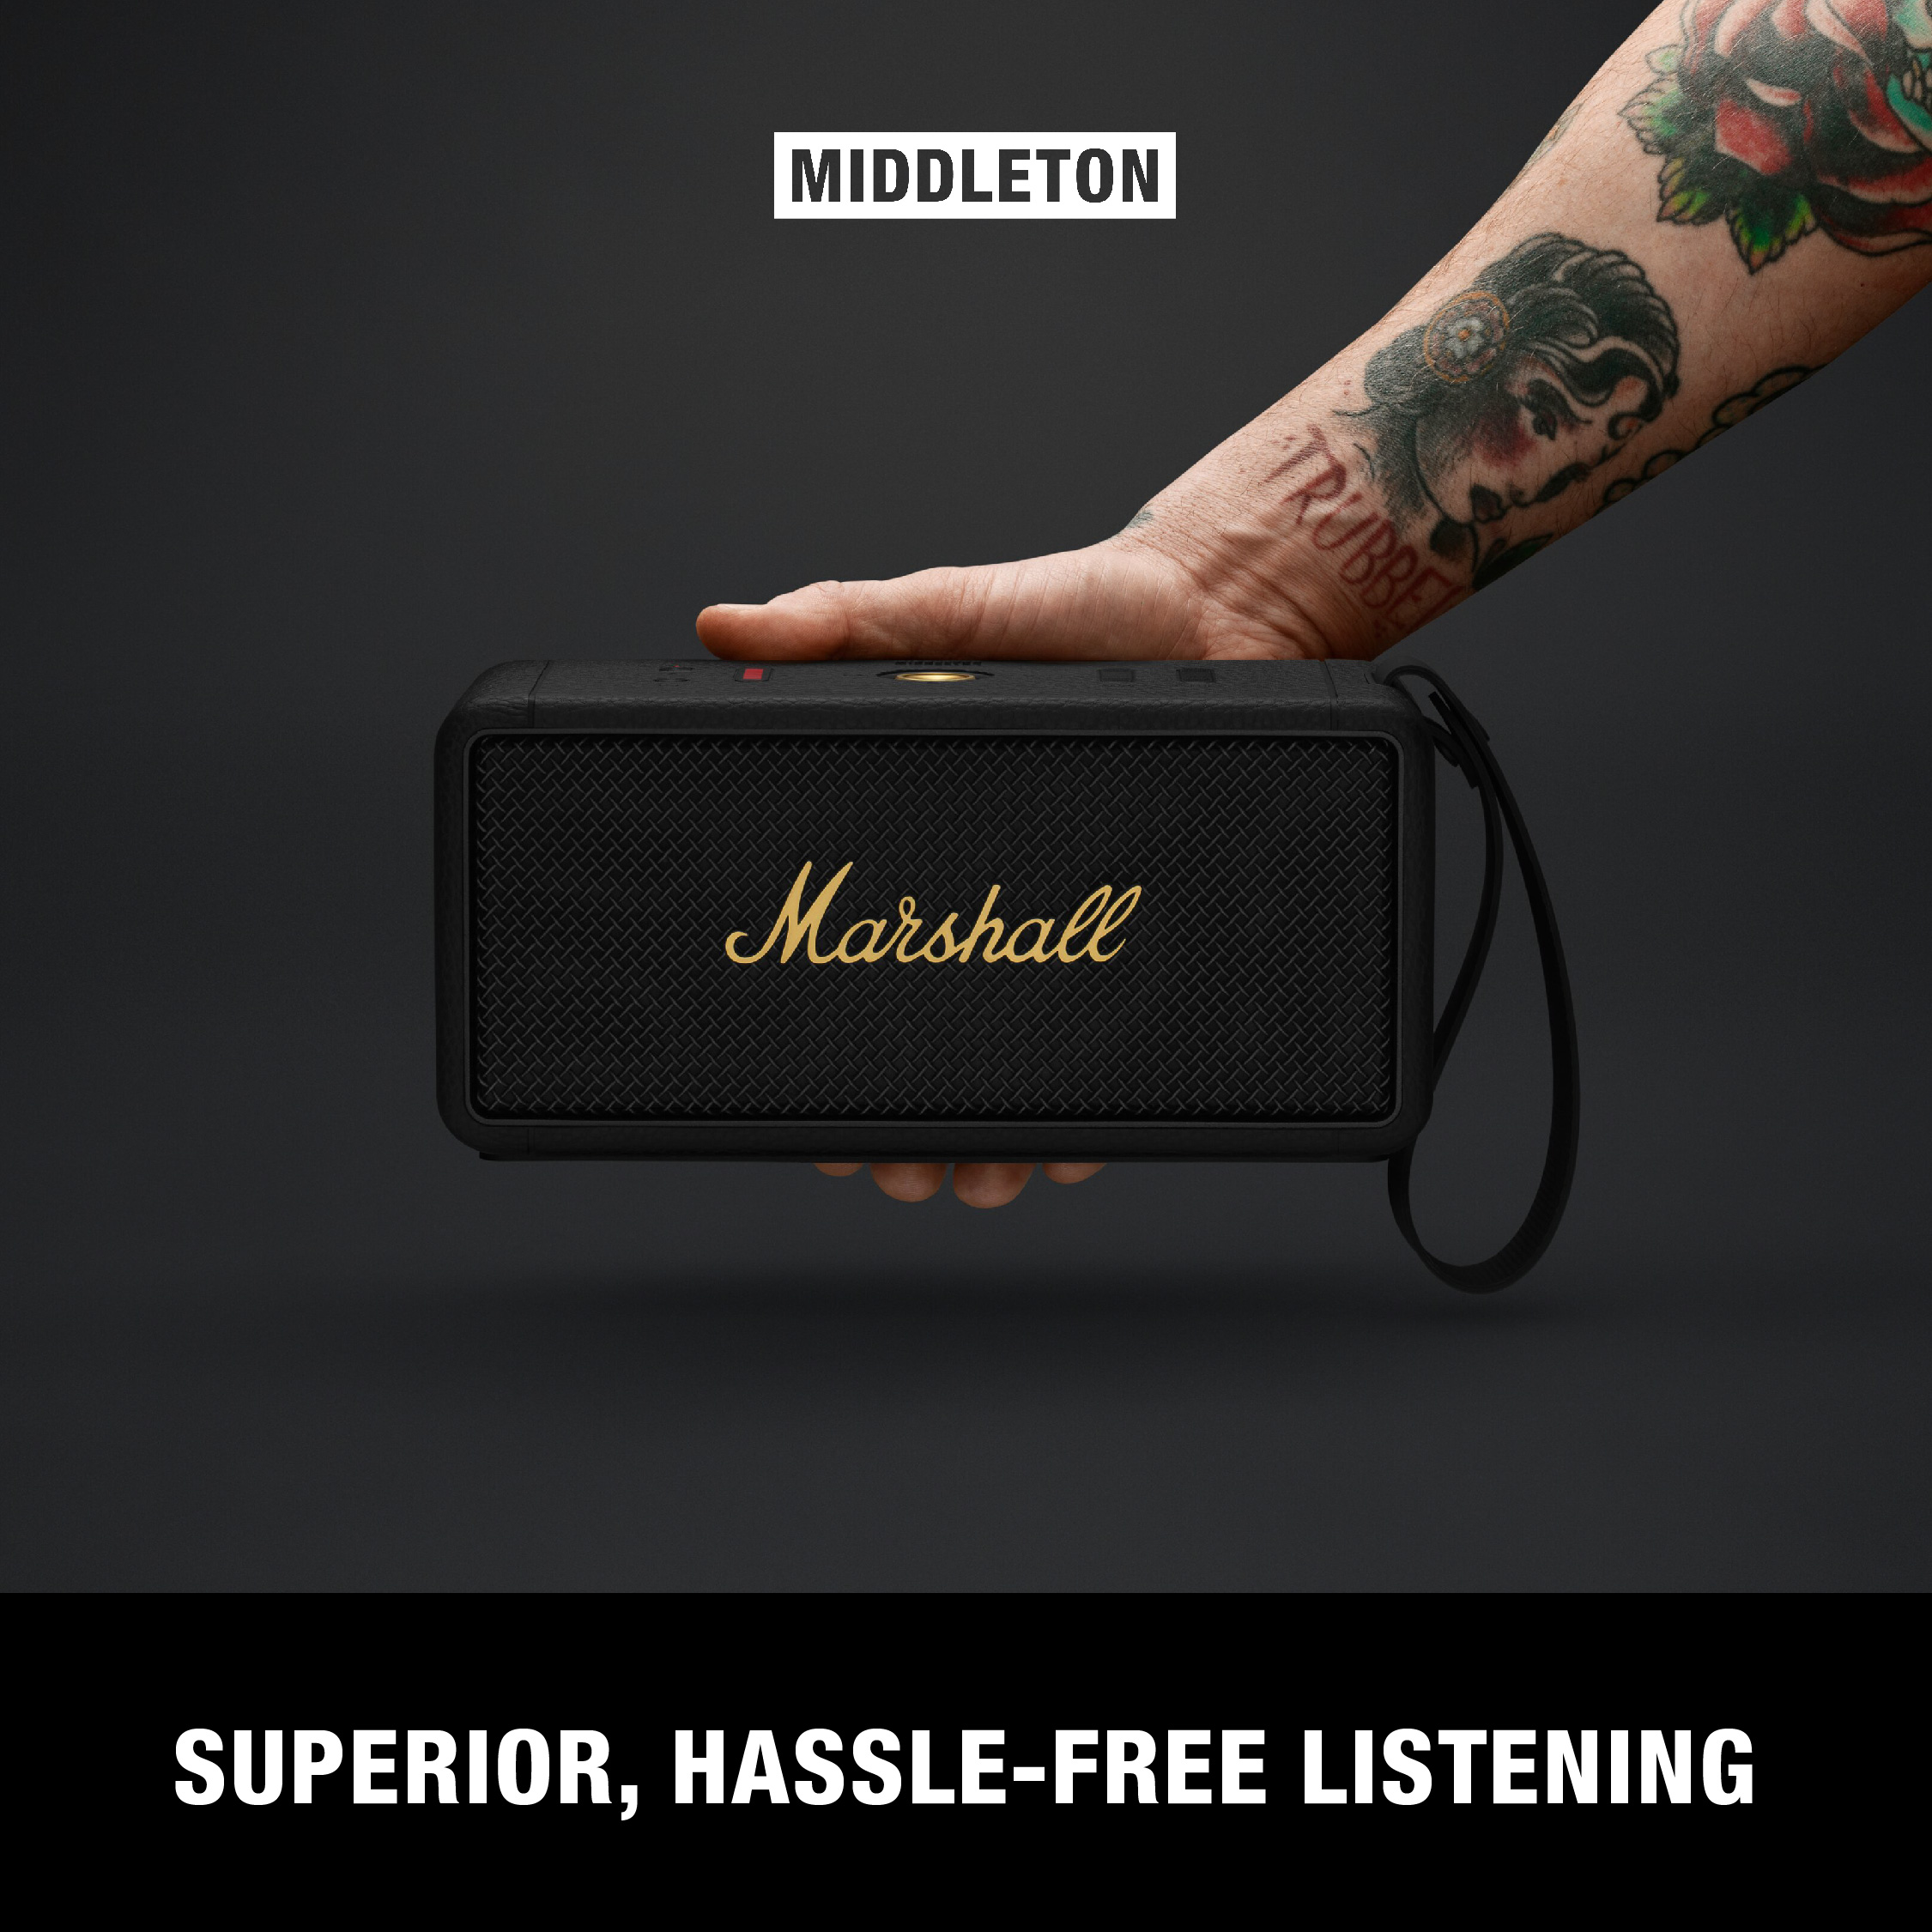 Loa Bluetooth Marshall Middleton Portable - Hàng Chính Hãng (Cream)